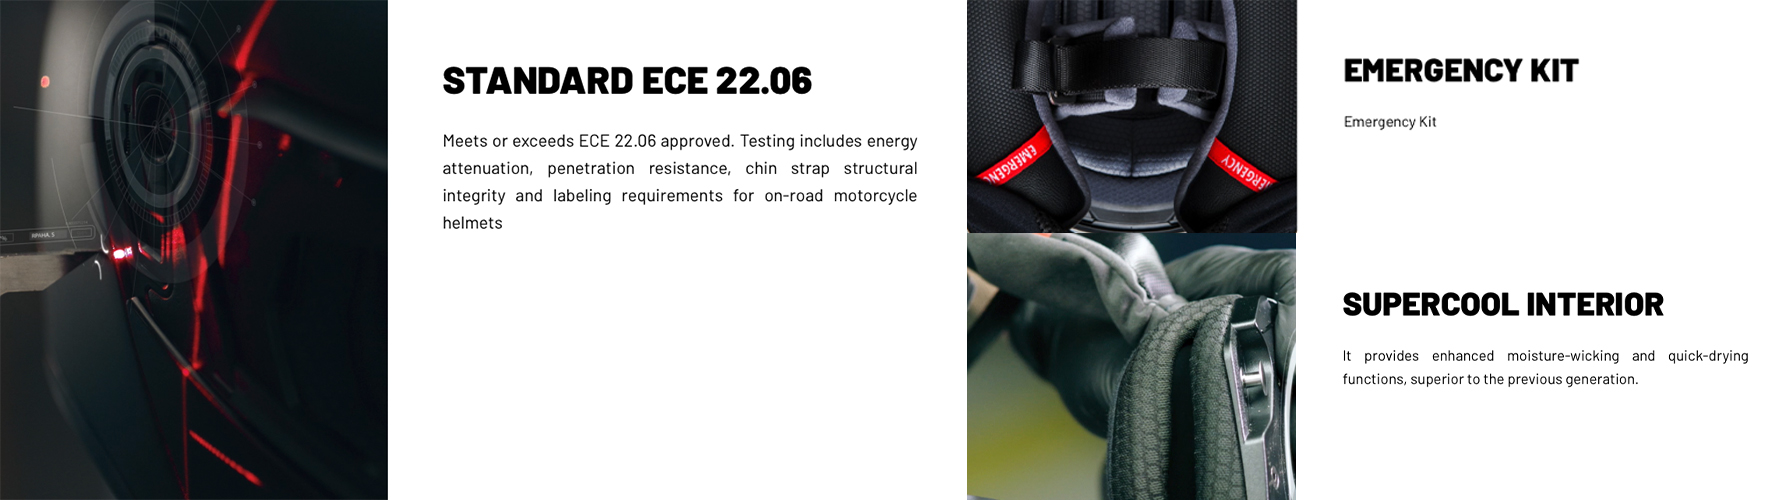 HJC V60符合歐盟ECE 22.06法規，內襯也有緊急快拆設計